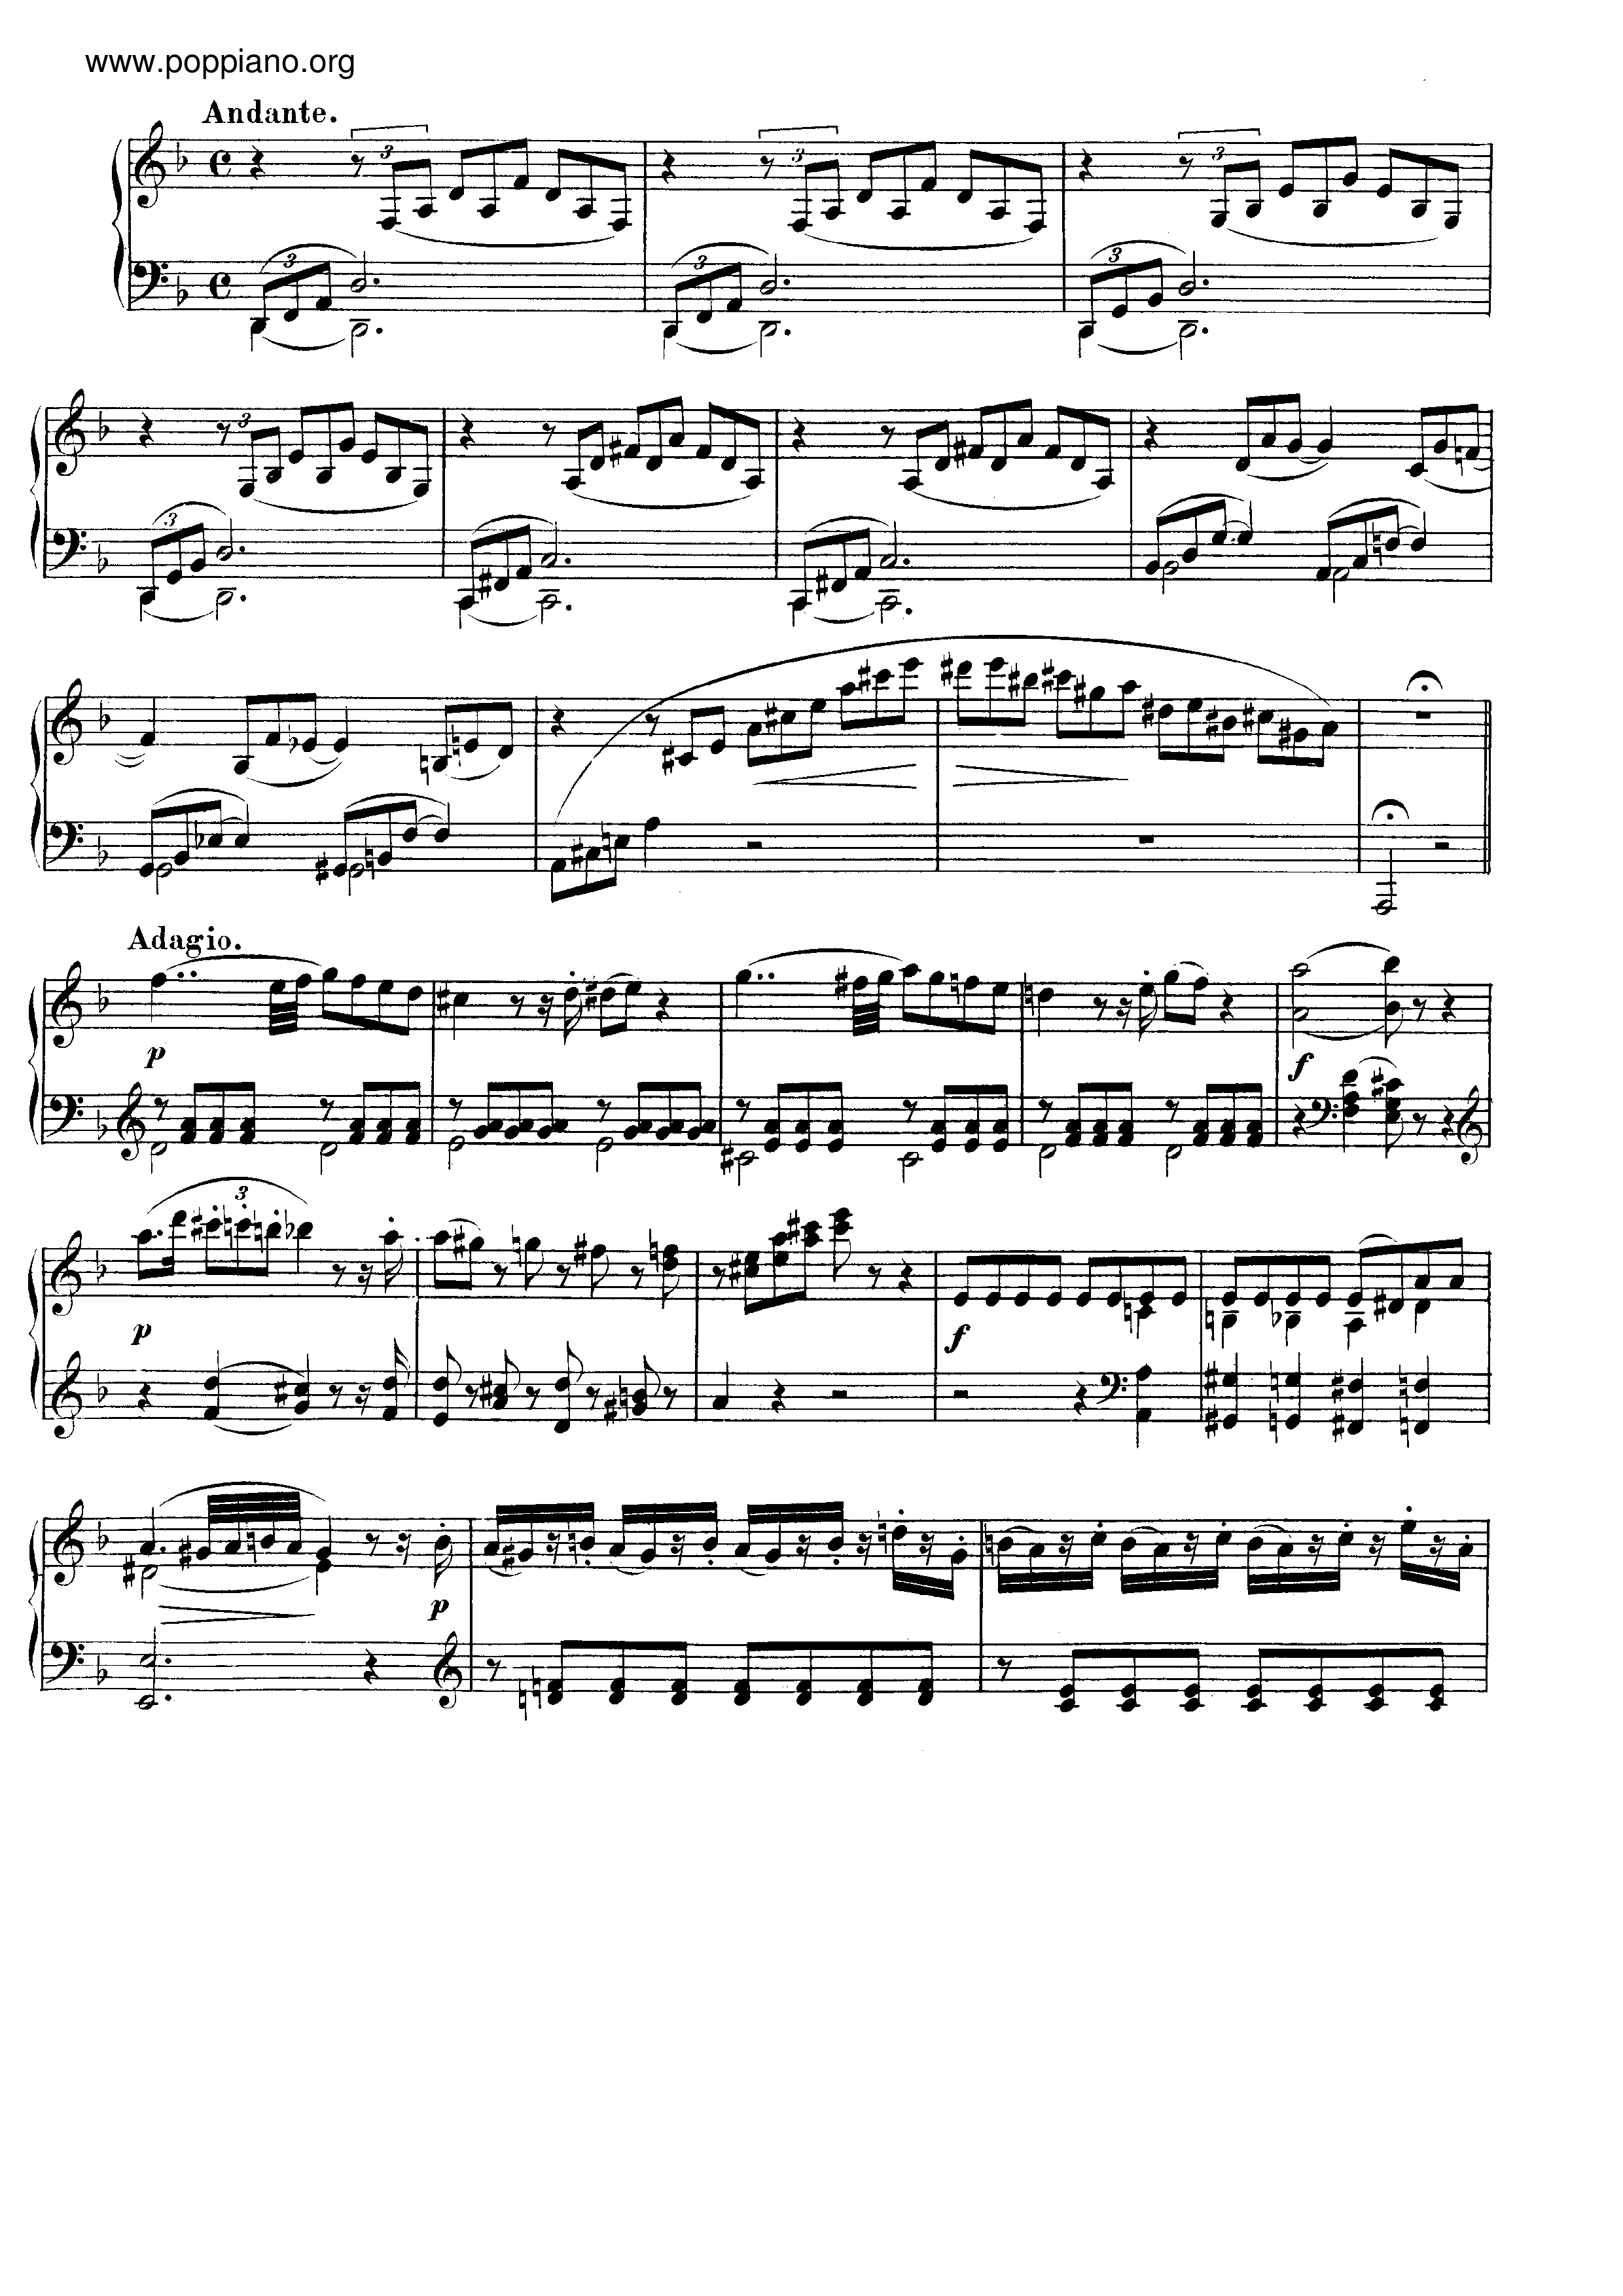 dolor de muelas Solitario Opresor ☆ Fantasia In D Minor, K. 397 | Sheet Music | Piano Score Free PDF Download  | HK Pop Piano Academy